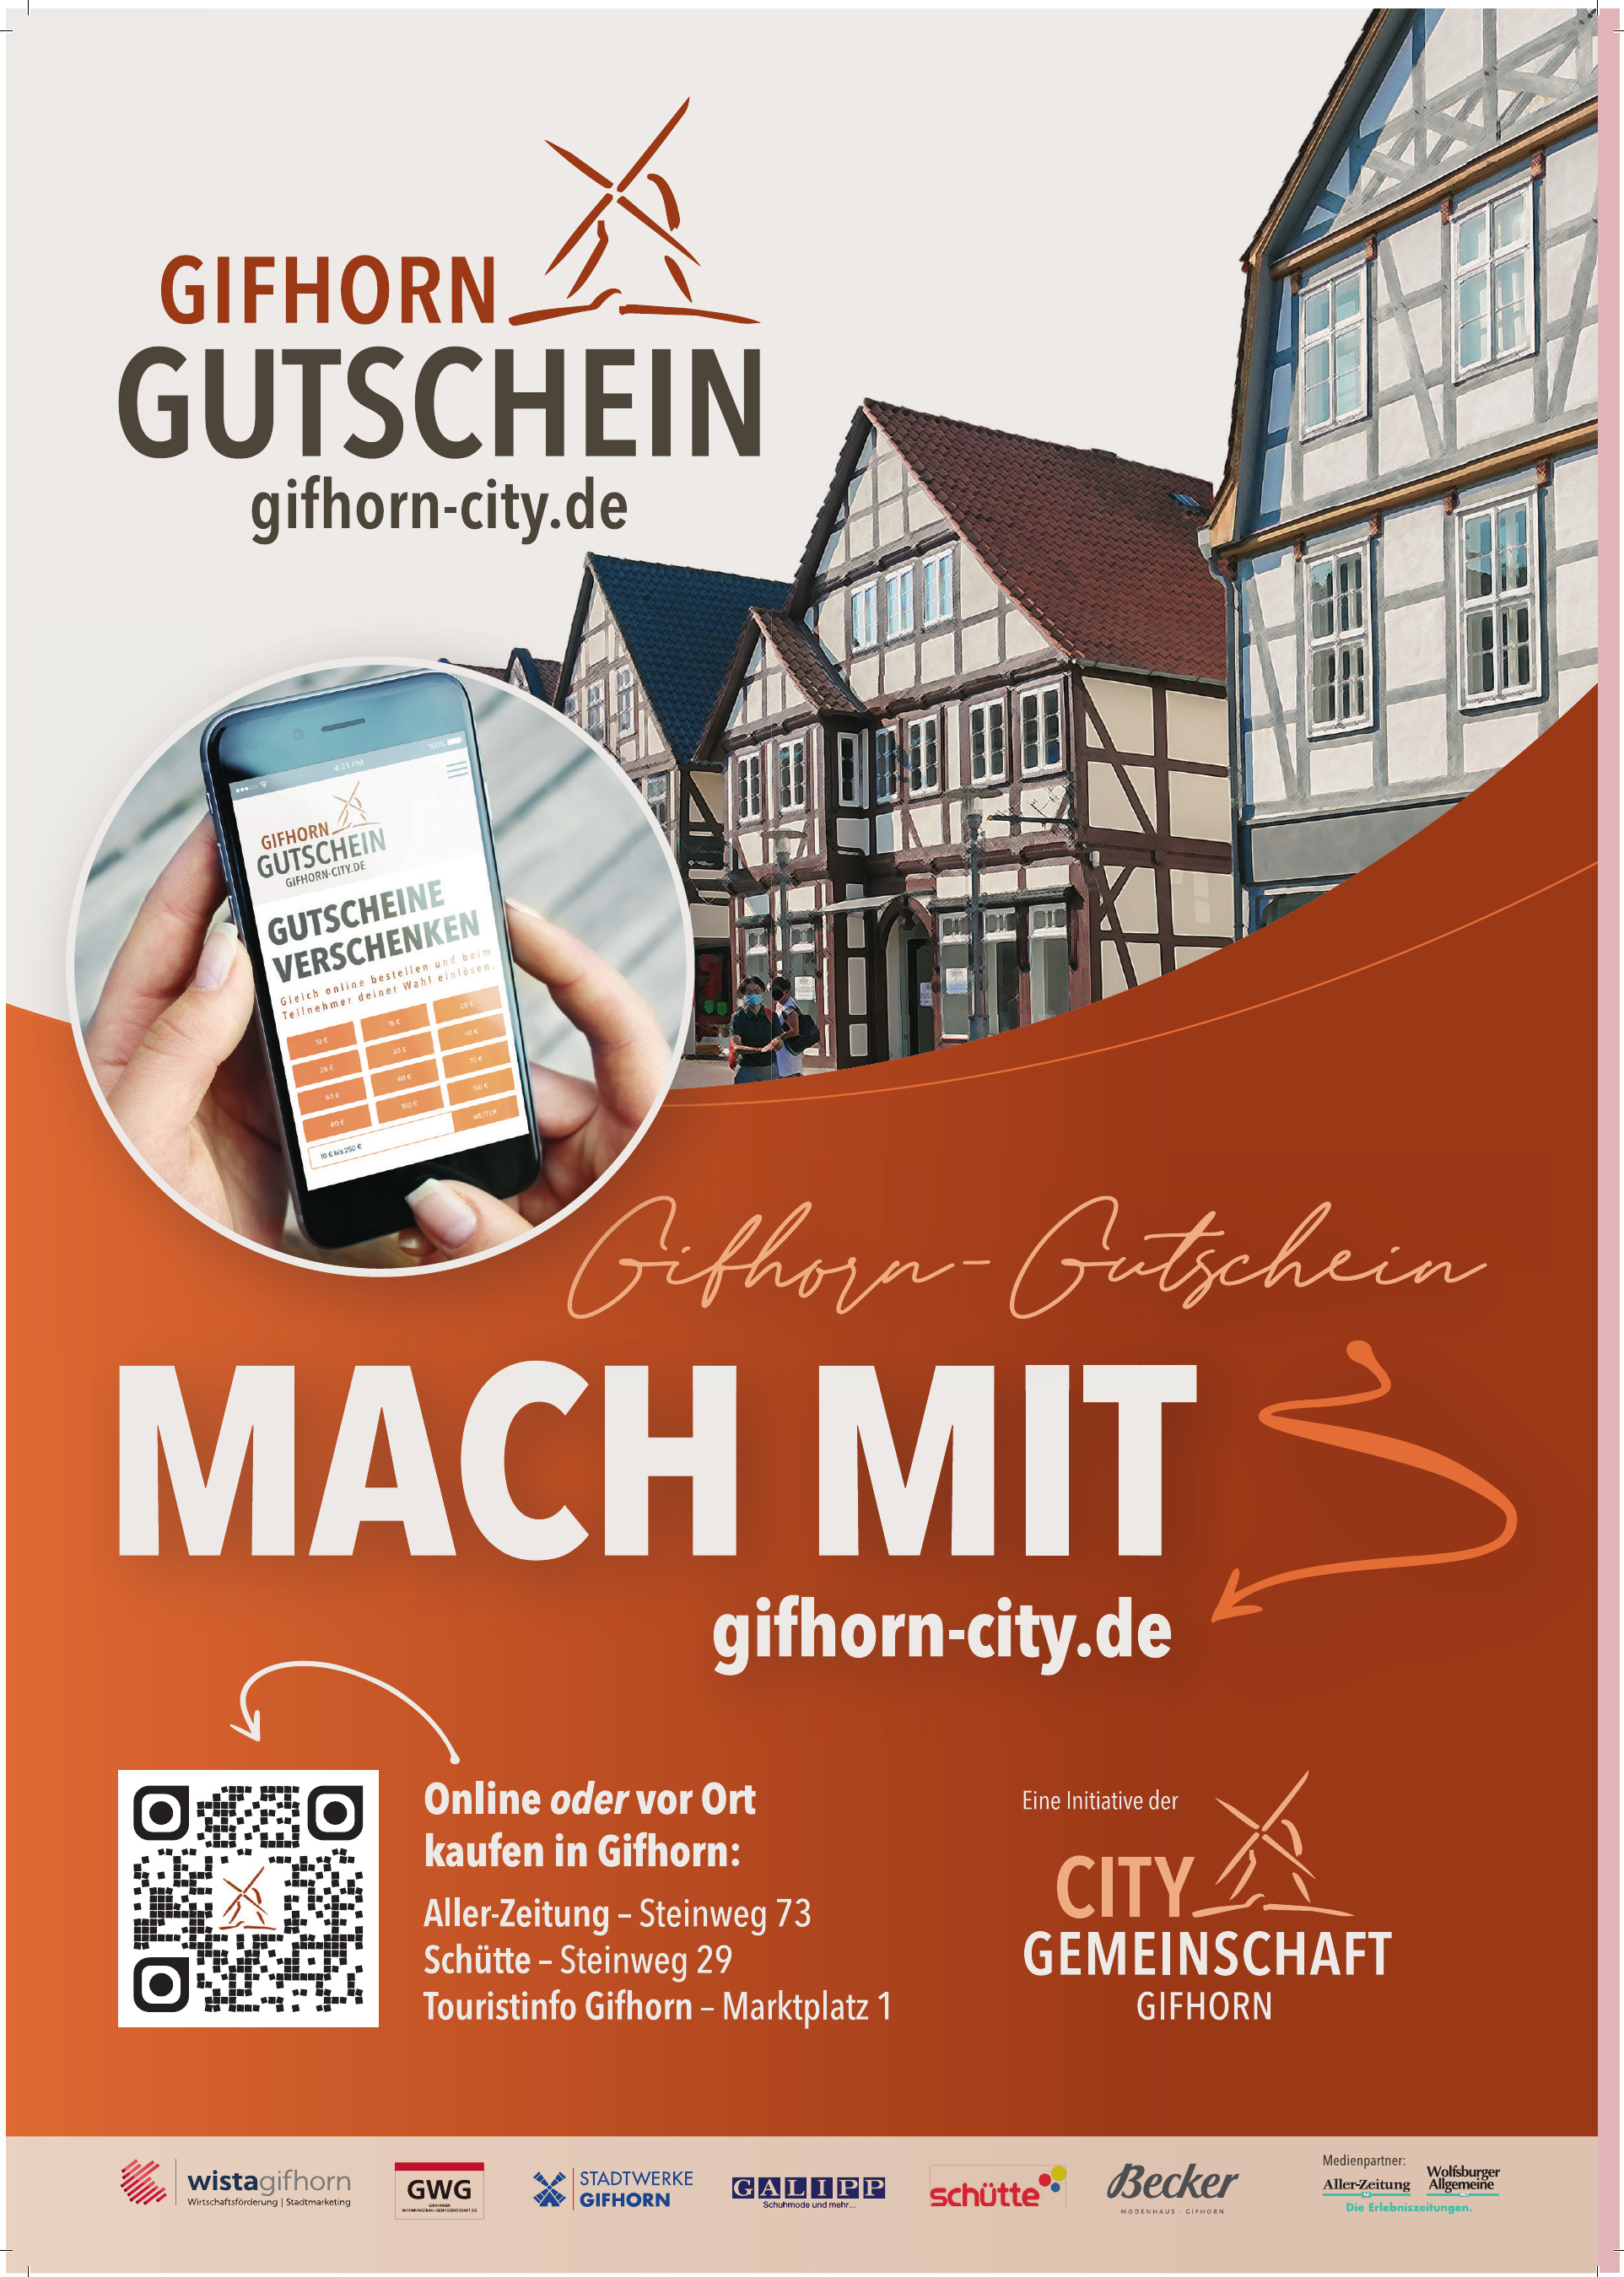 City Gemainschaft Gifhorn